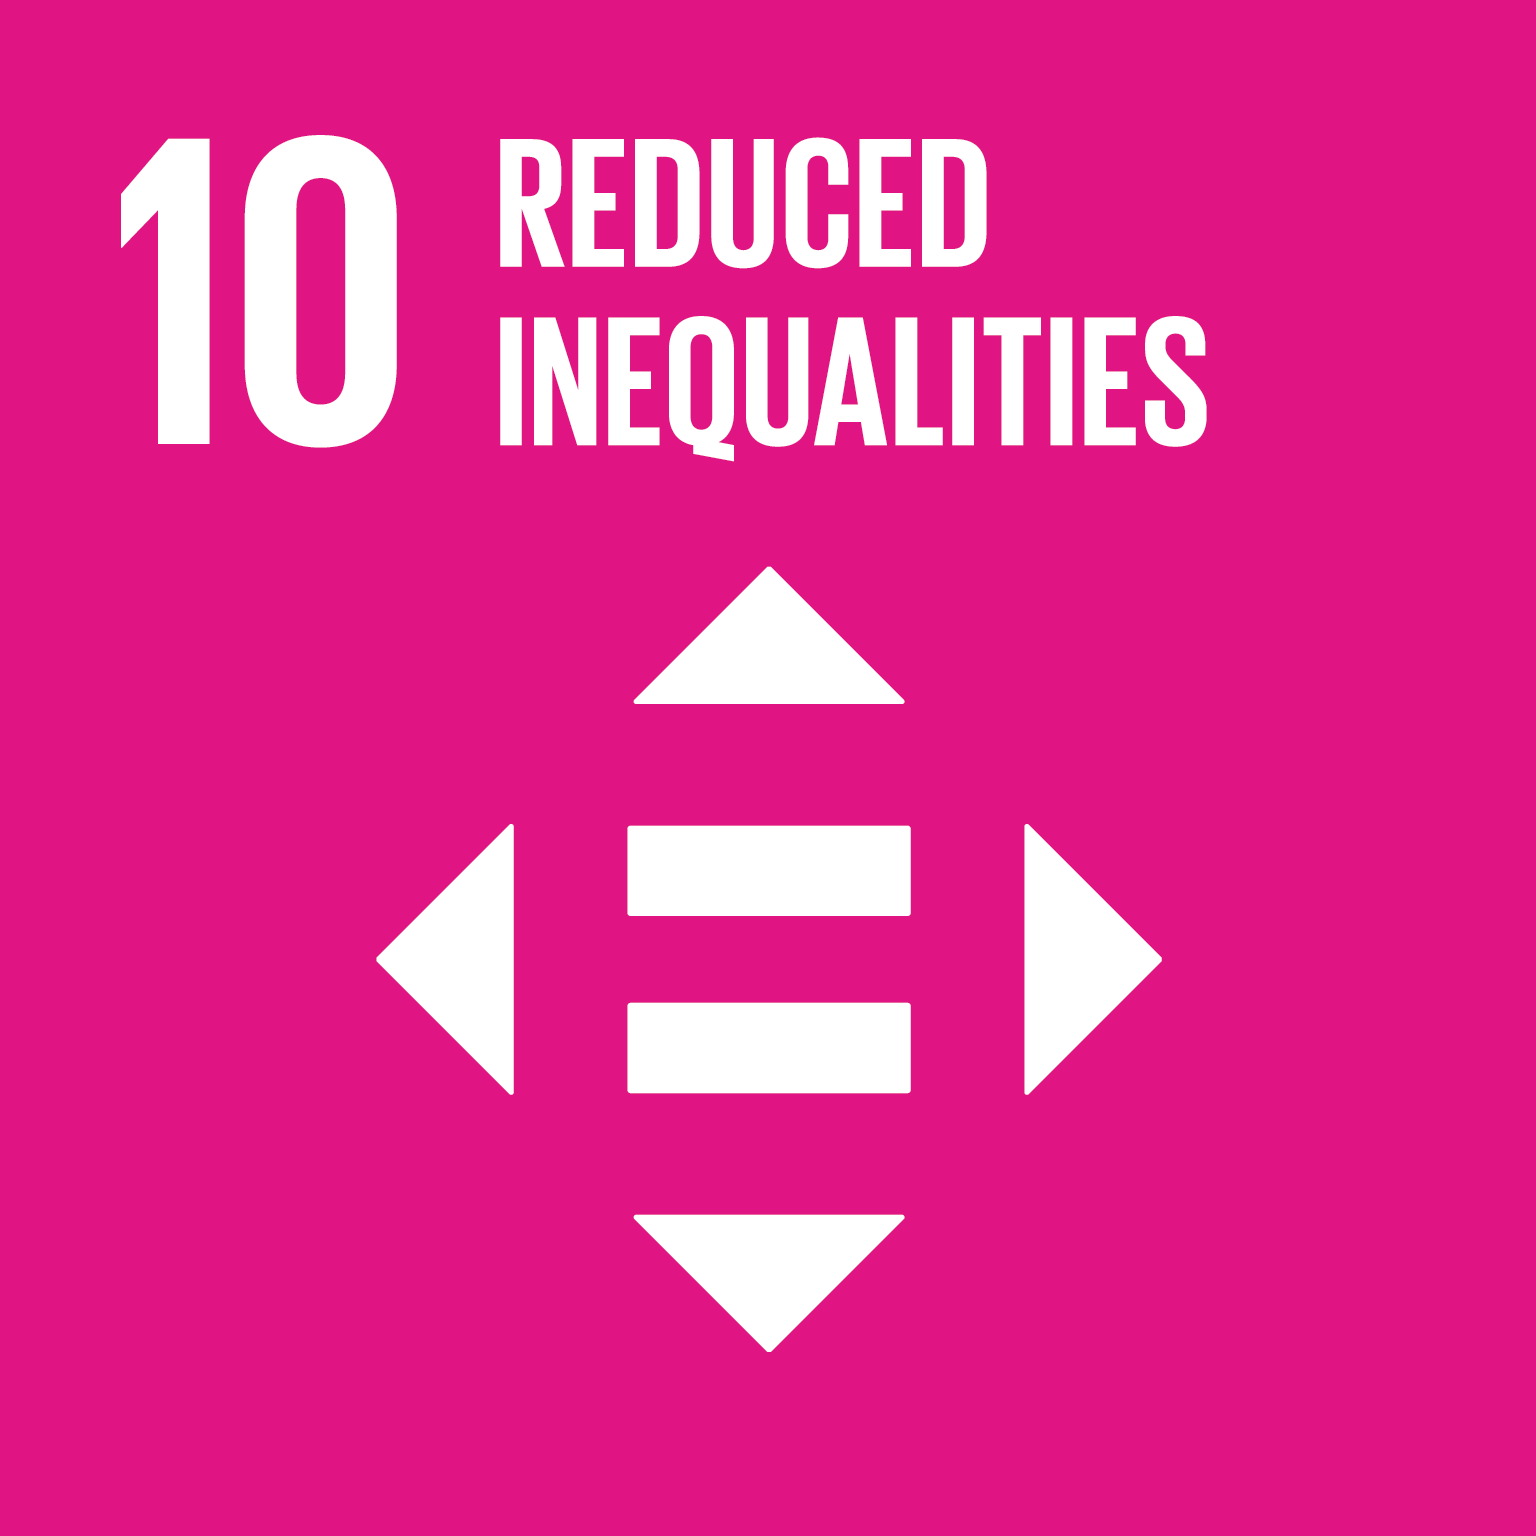 UN SDG Goal